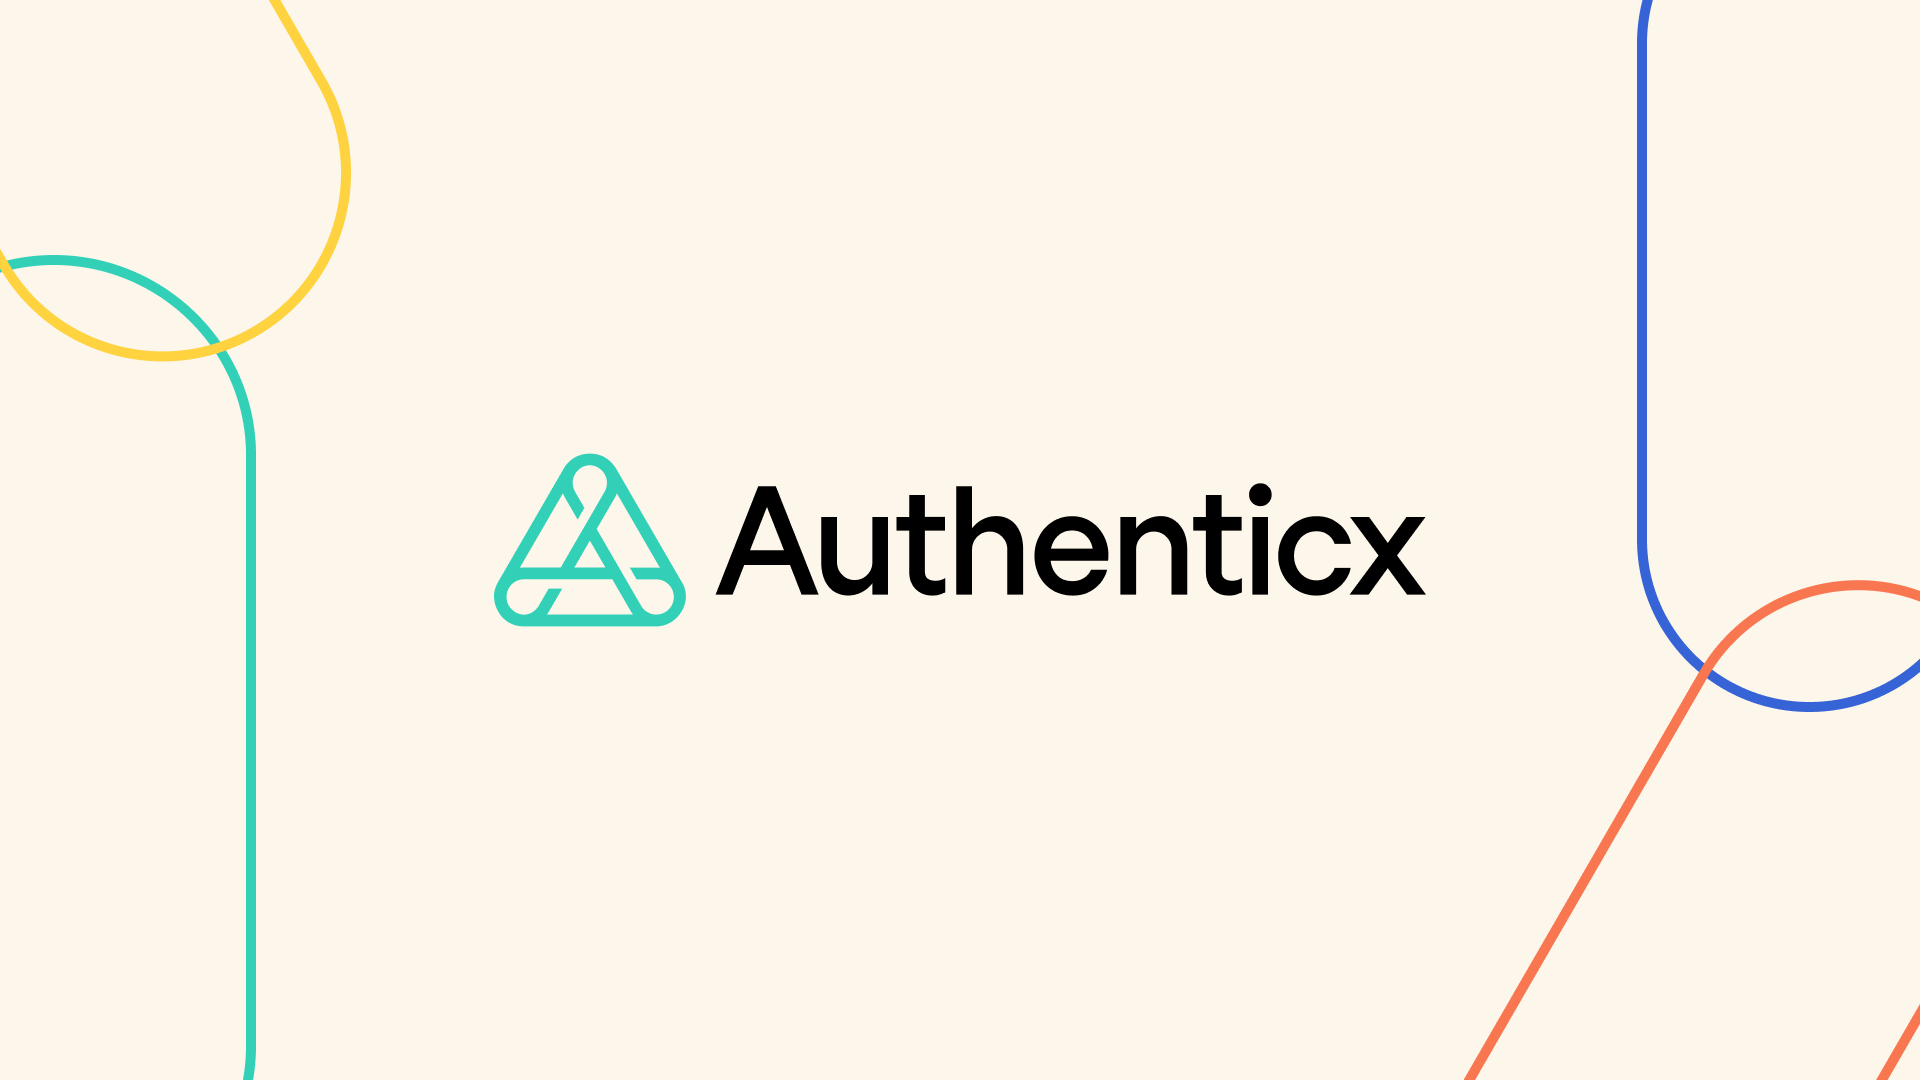 authenticx soc 2 announcement